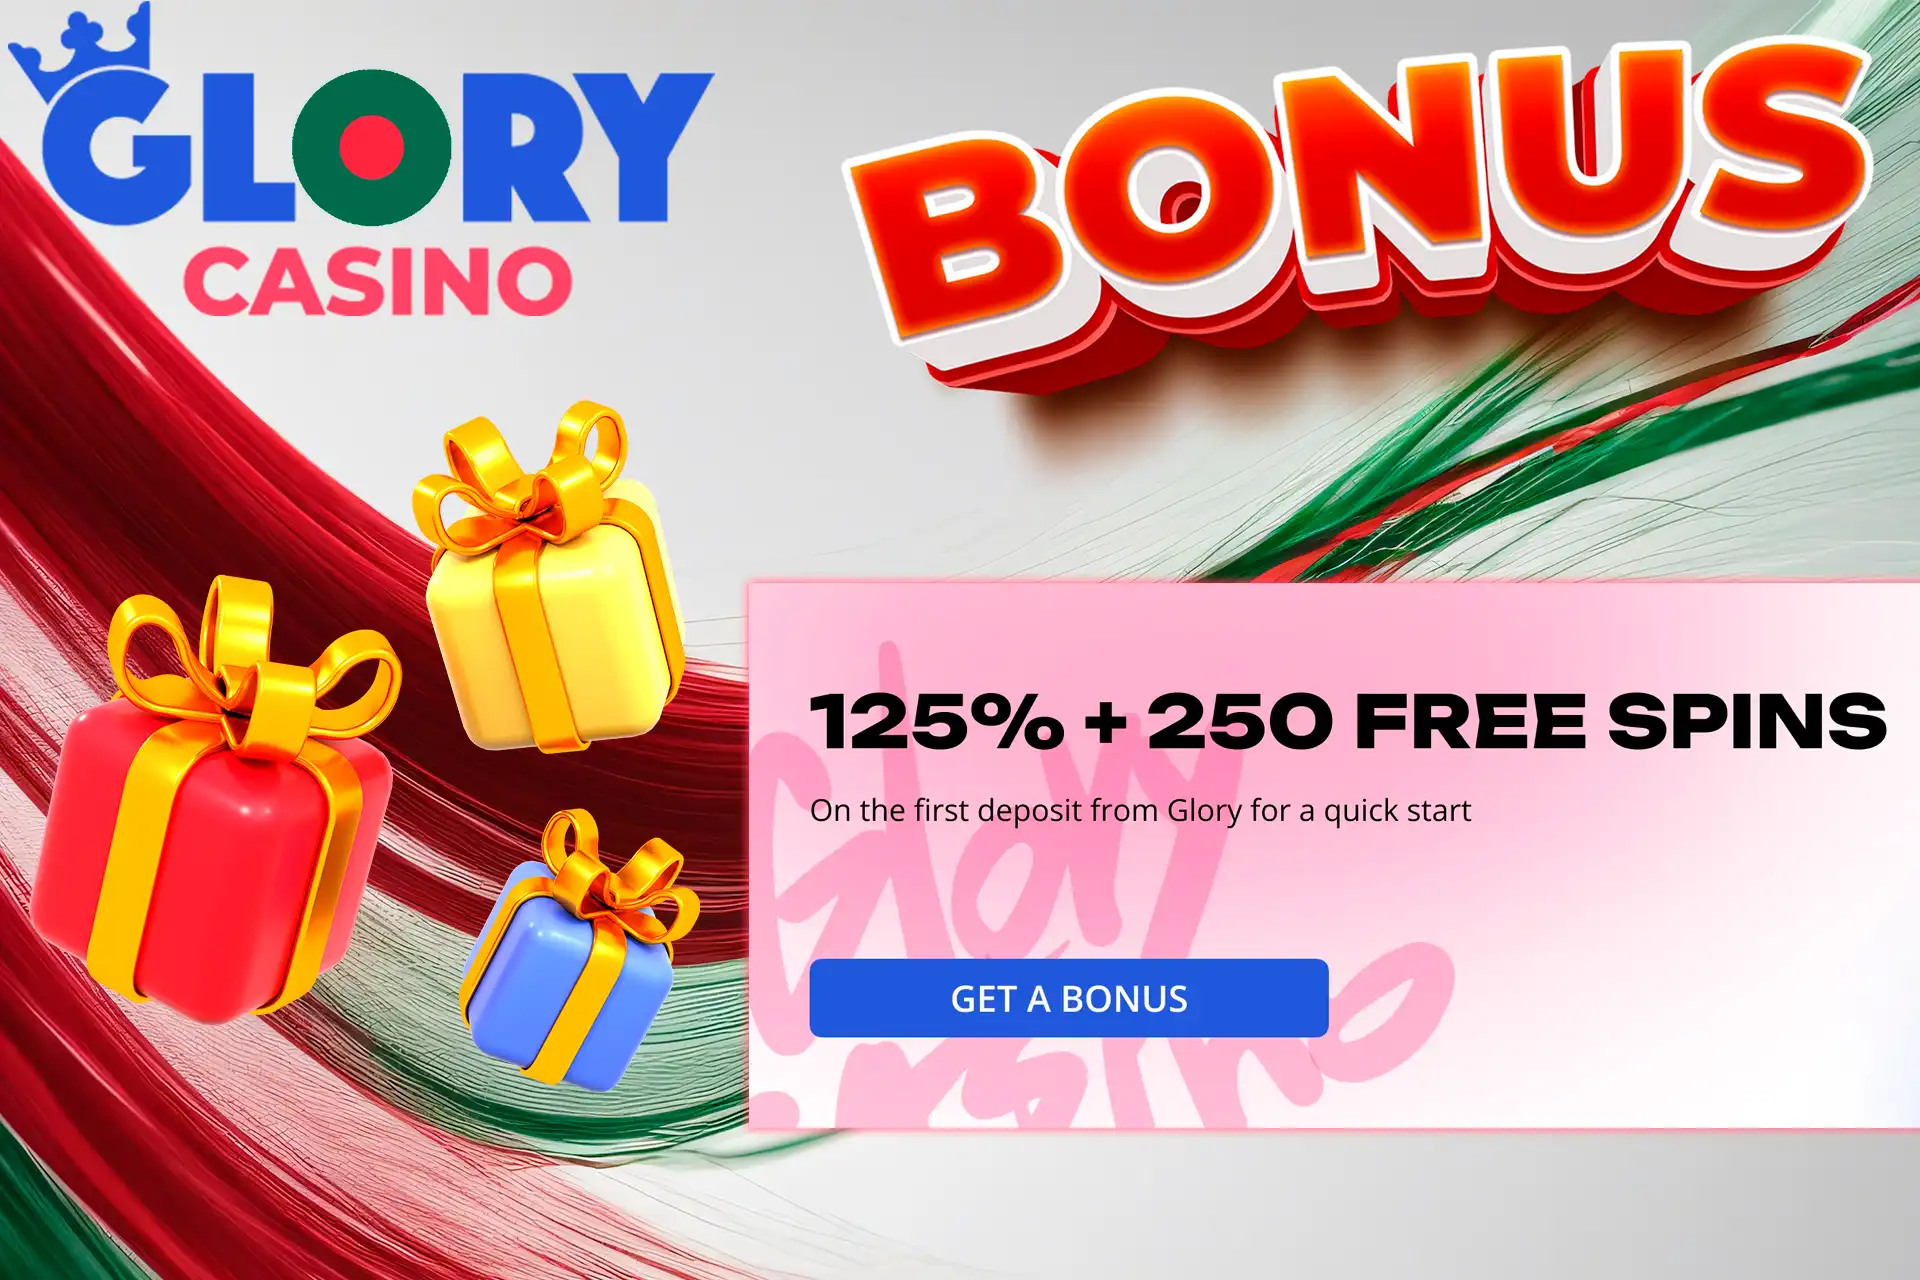 Check out the bonus at Glory Casino Bangladesh